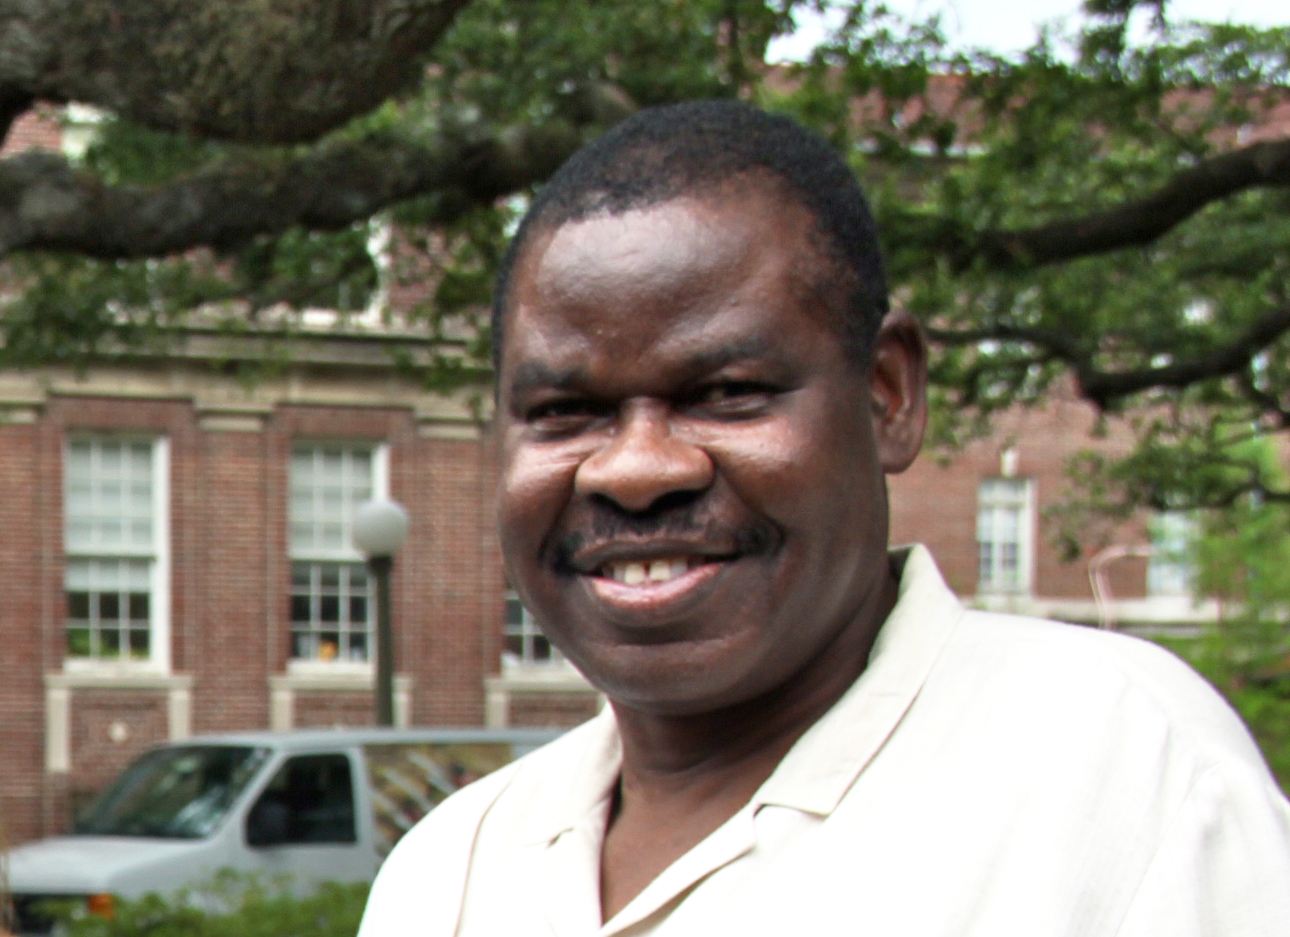 N. Frank Ukadike, Tulane University